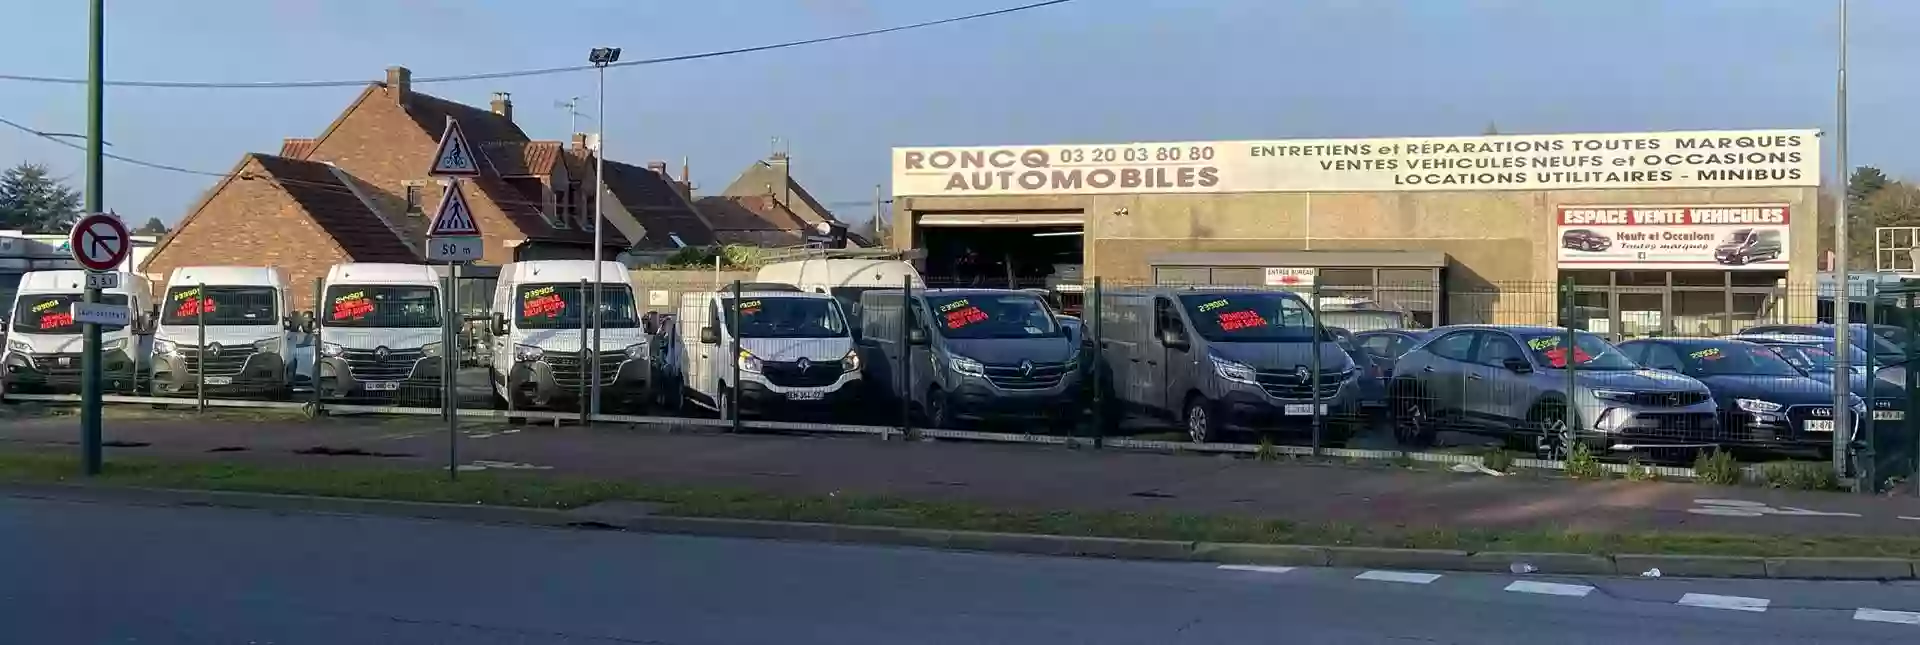 Roncq Automobiles